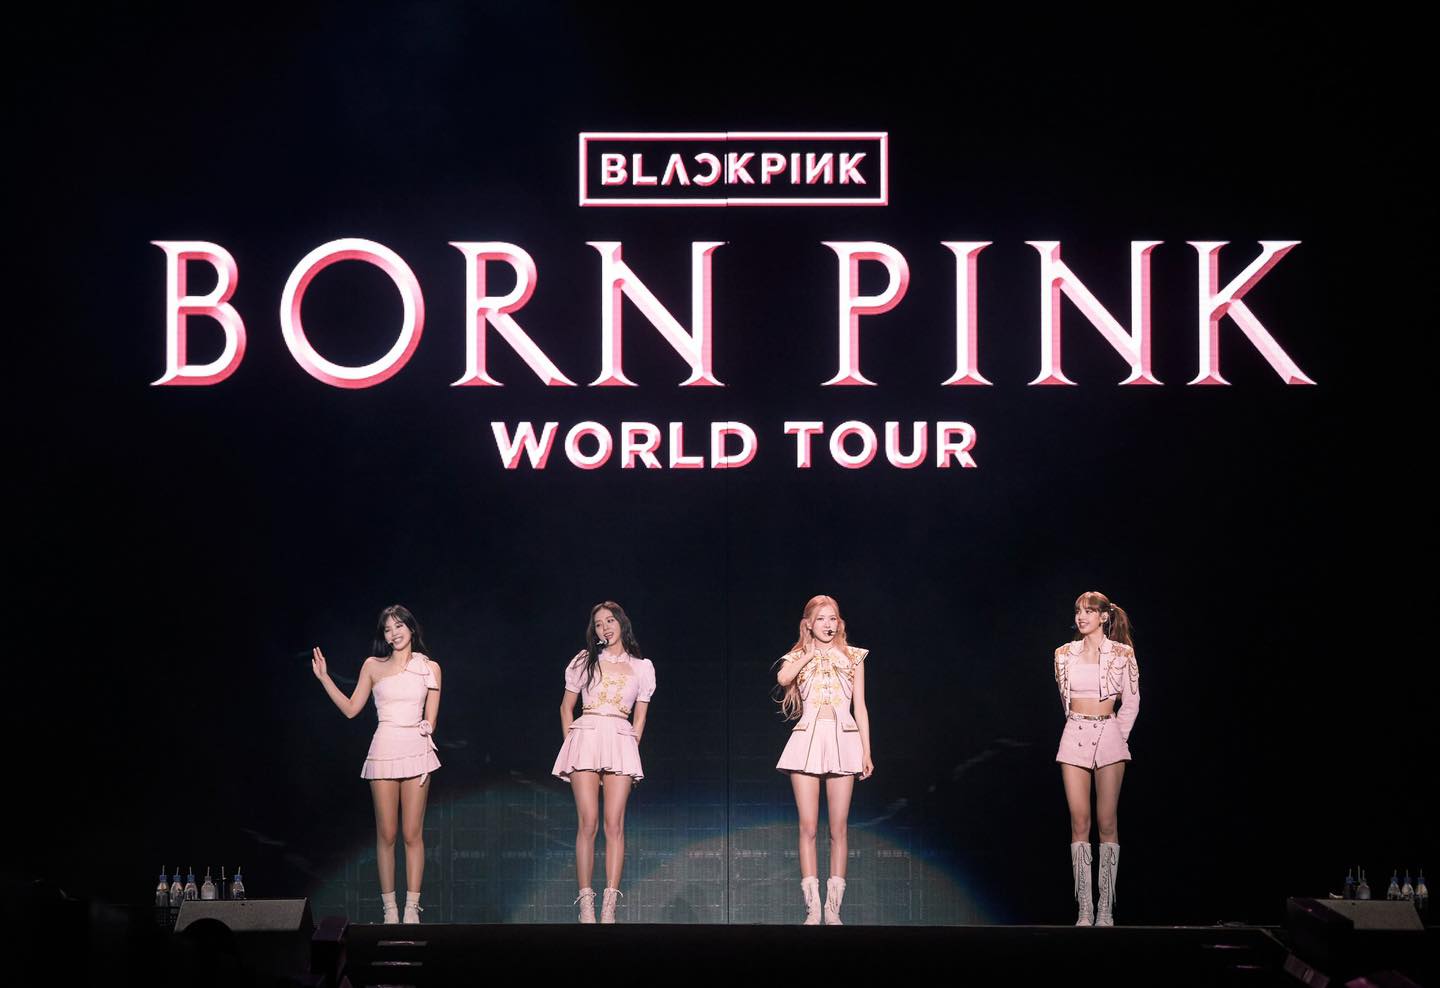 Concert “Born Pink” của BlackPink tại Hà Nội chính thức được chấp thuận với 2 đêm diễn vào 29 - 30/7 - Ảnh 1